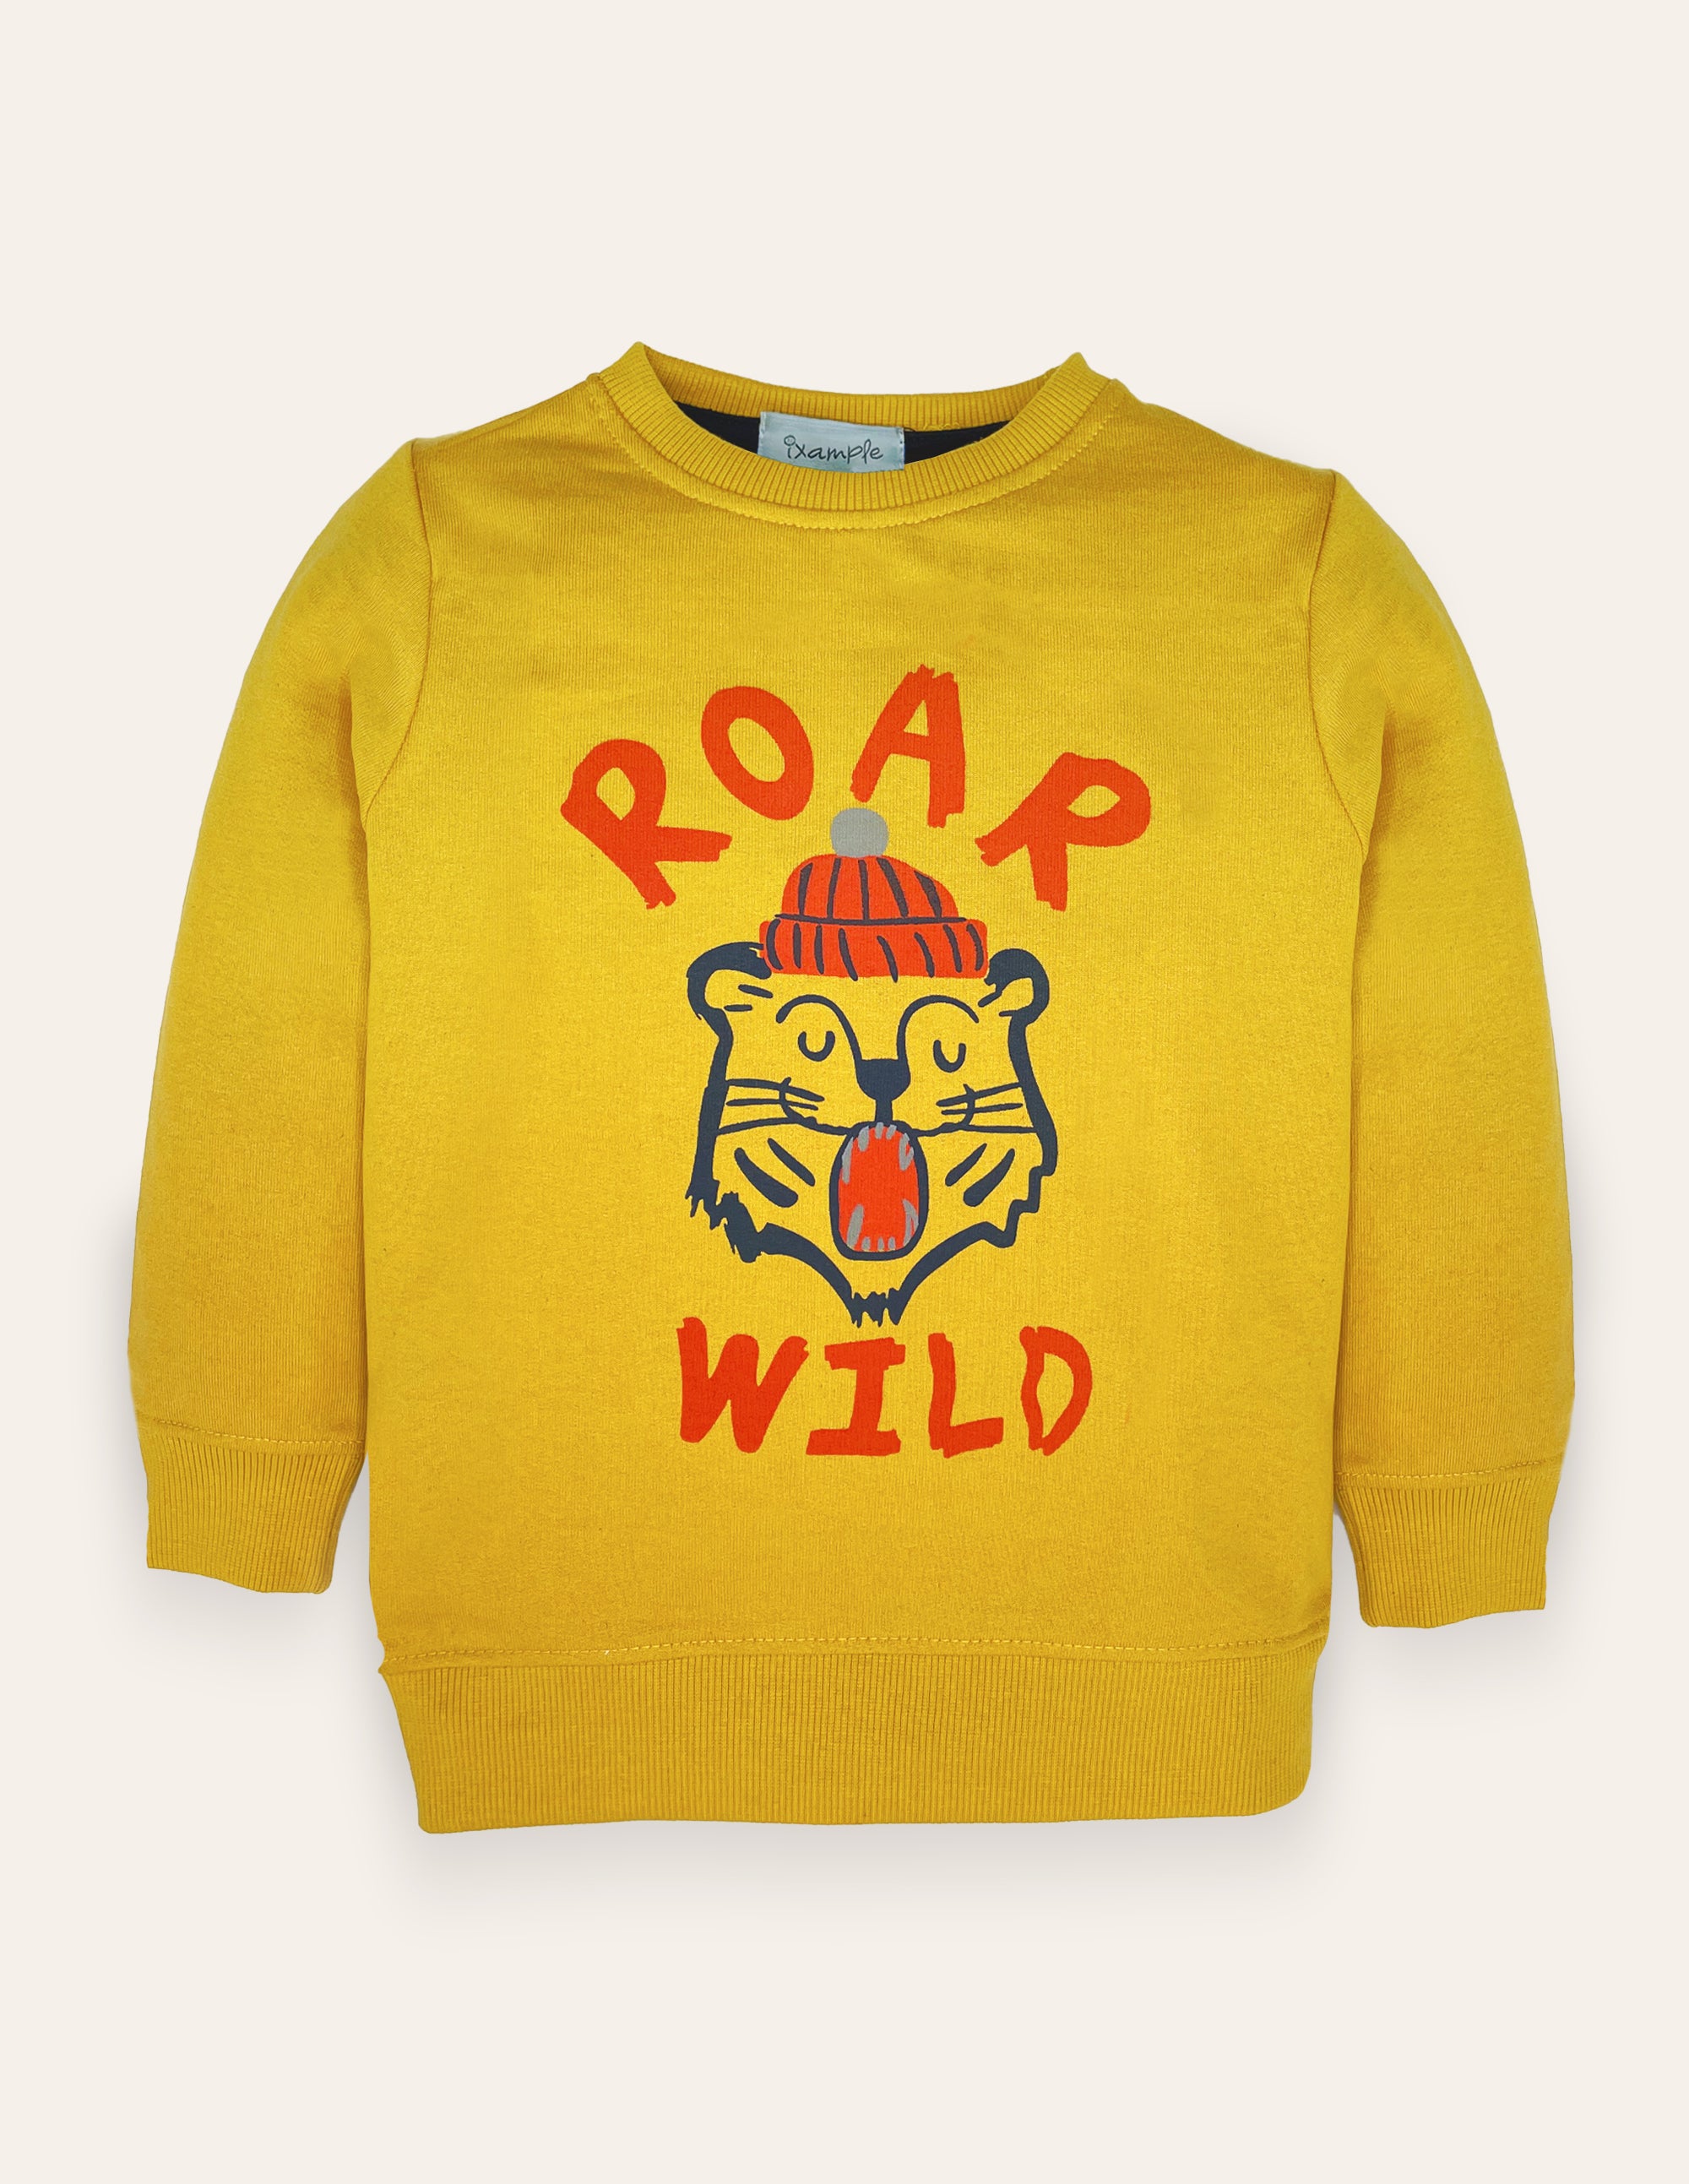 Roar Wild Sweatshirt